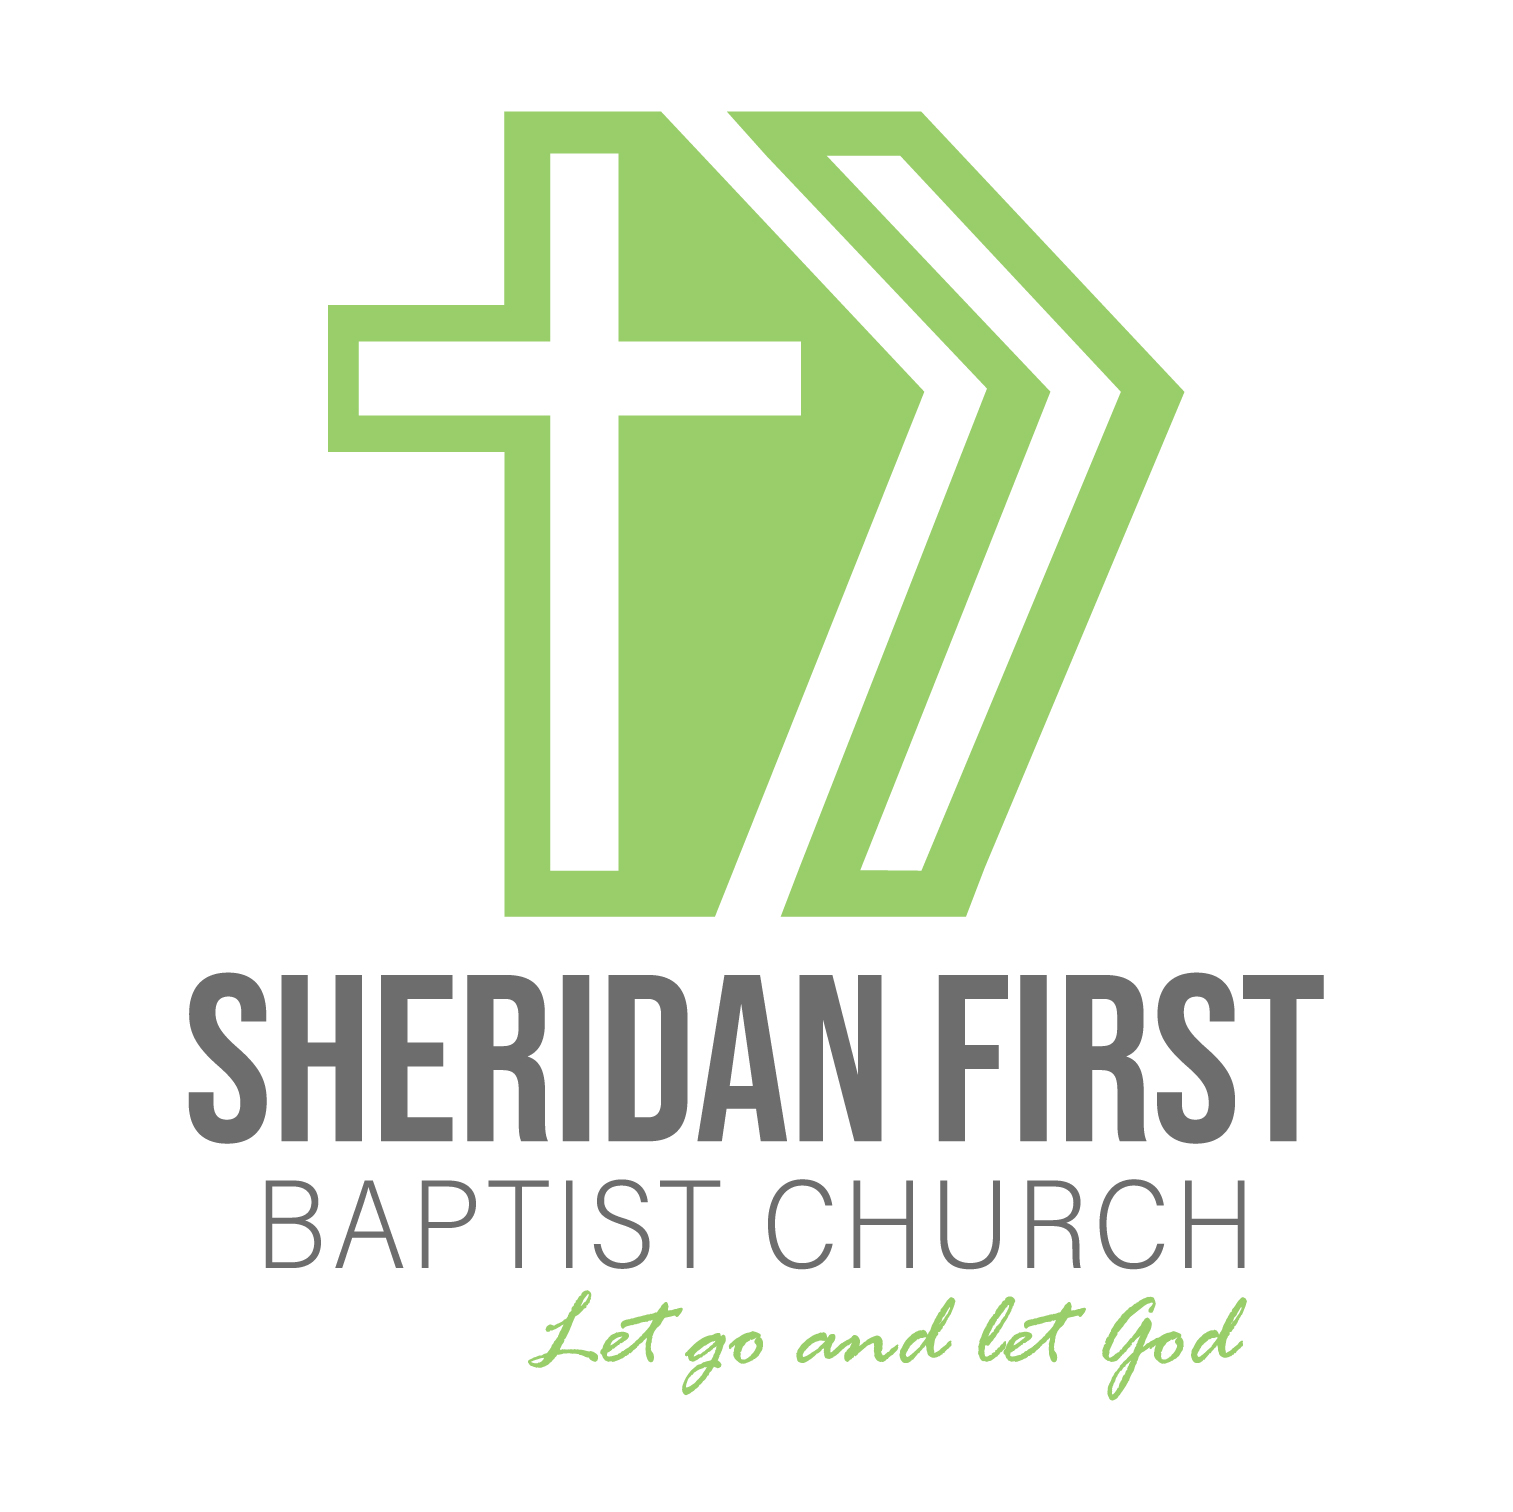 Sheridan First Baptist Church